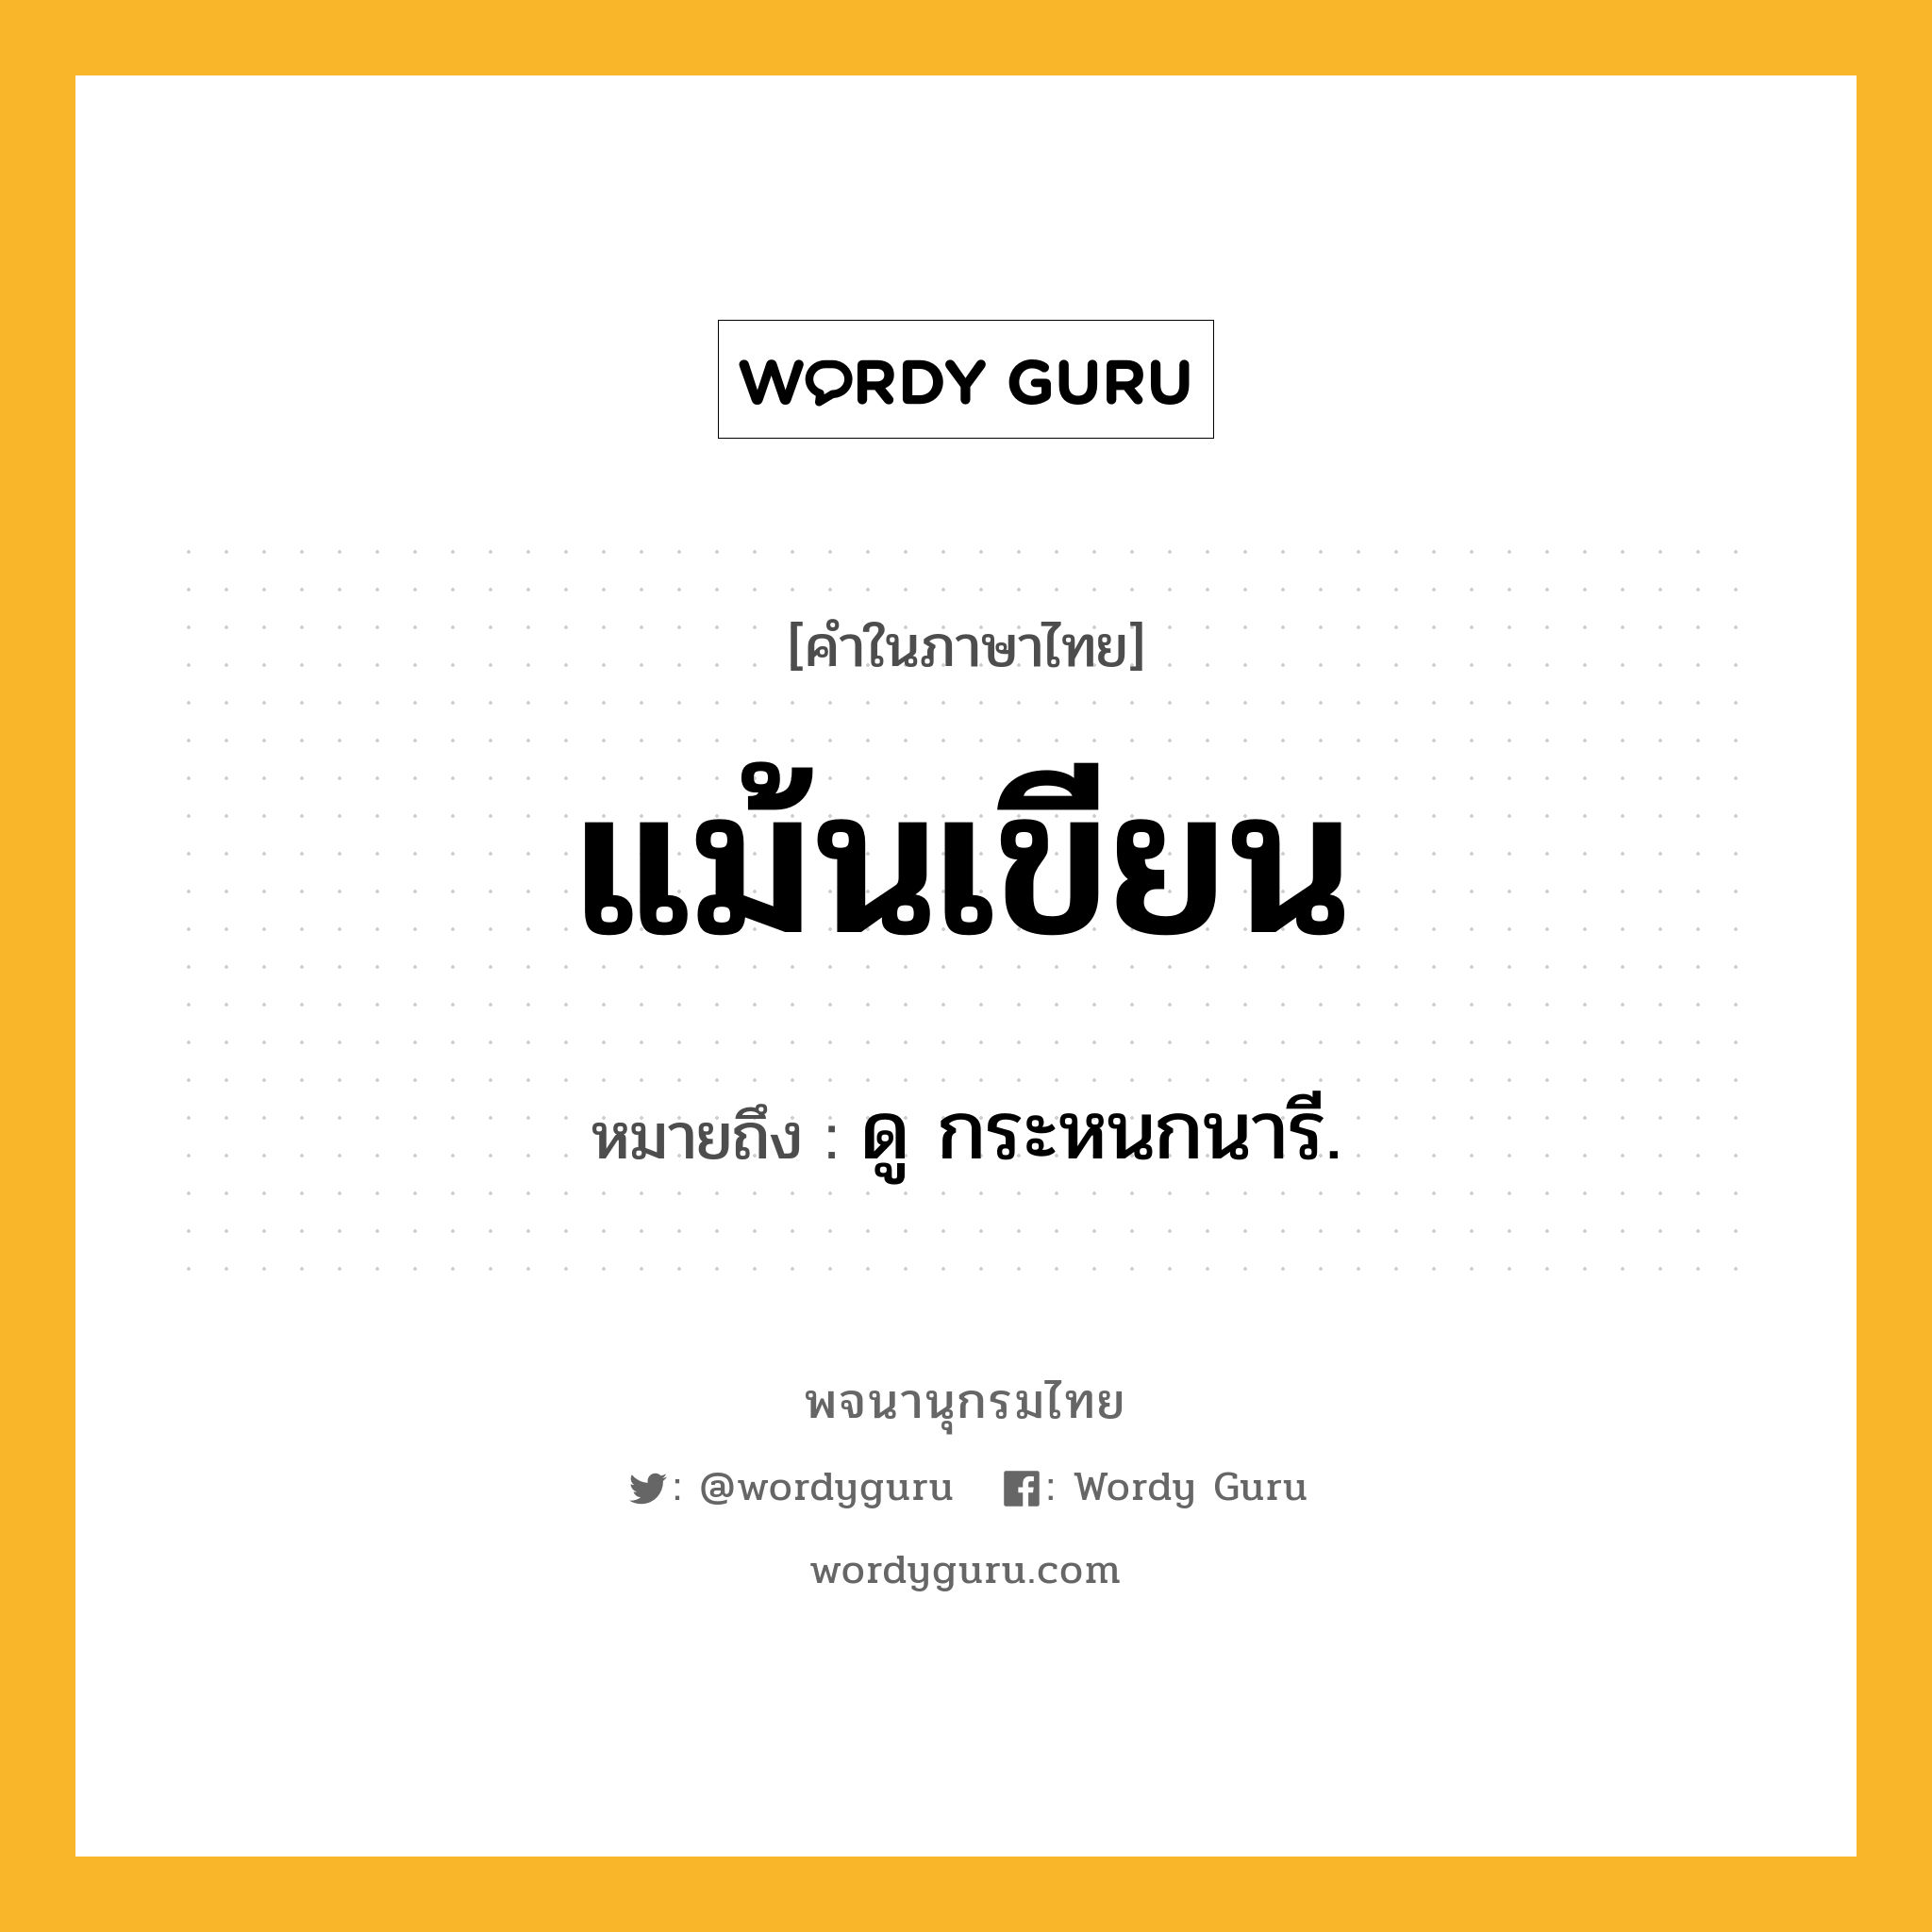 แม้นเขียน หมายถึงอะไร?, คำในภาษาไทย แม้นเขียน หมายถึง ดู กระหนกนารี.